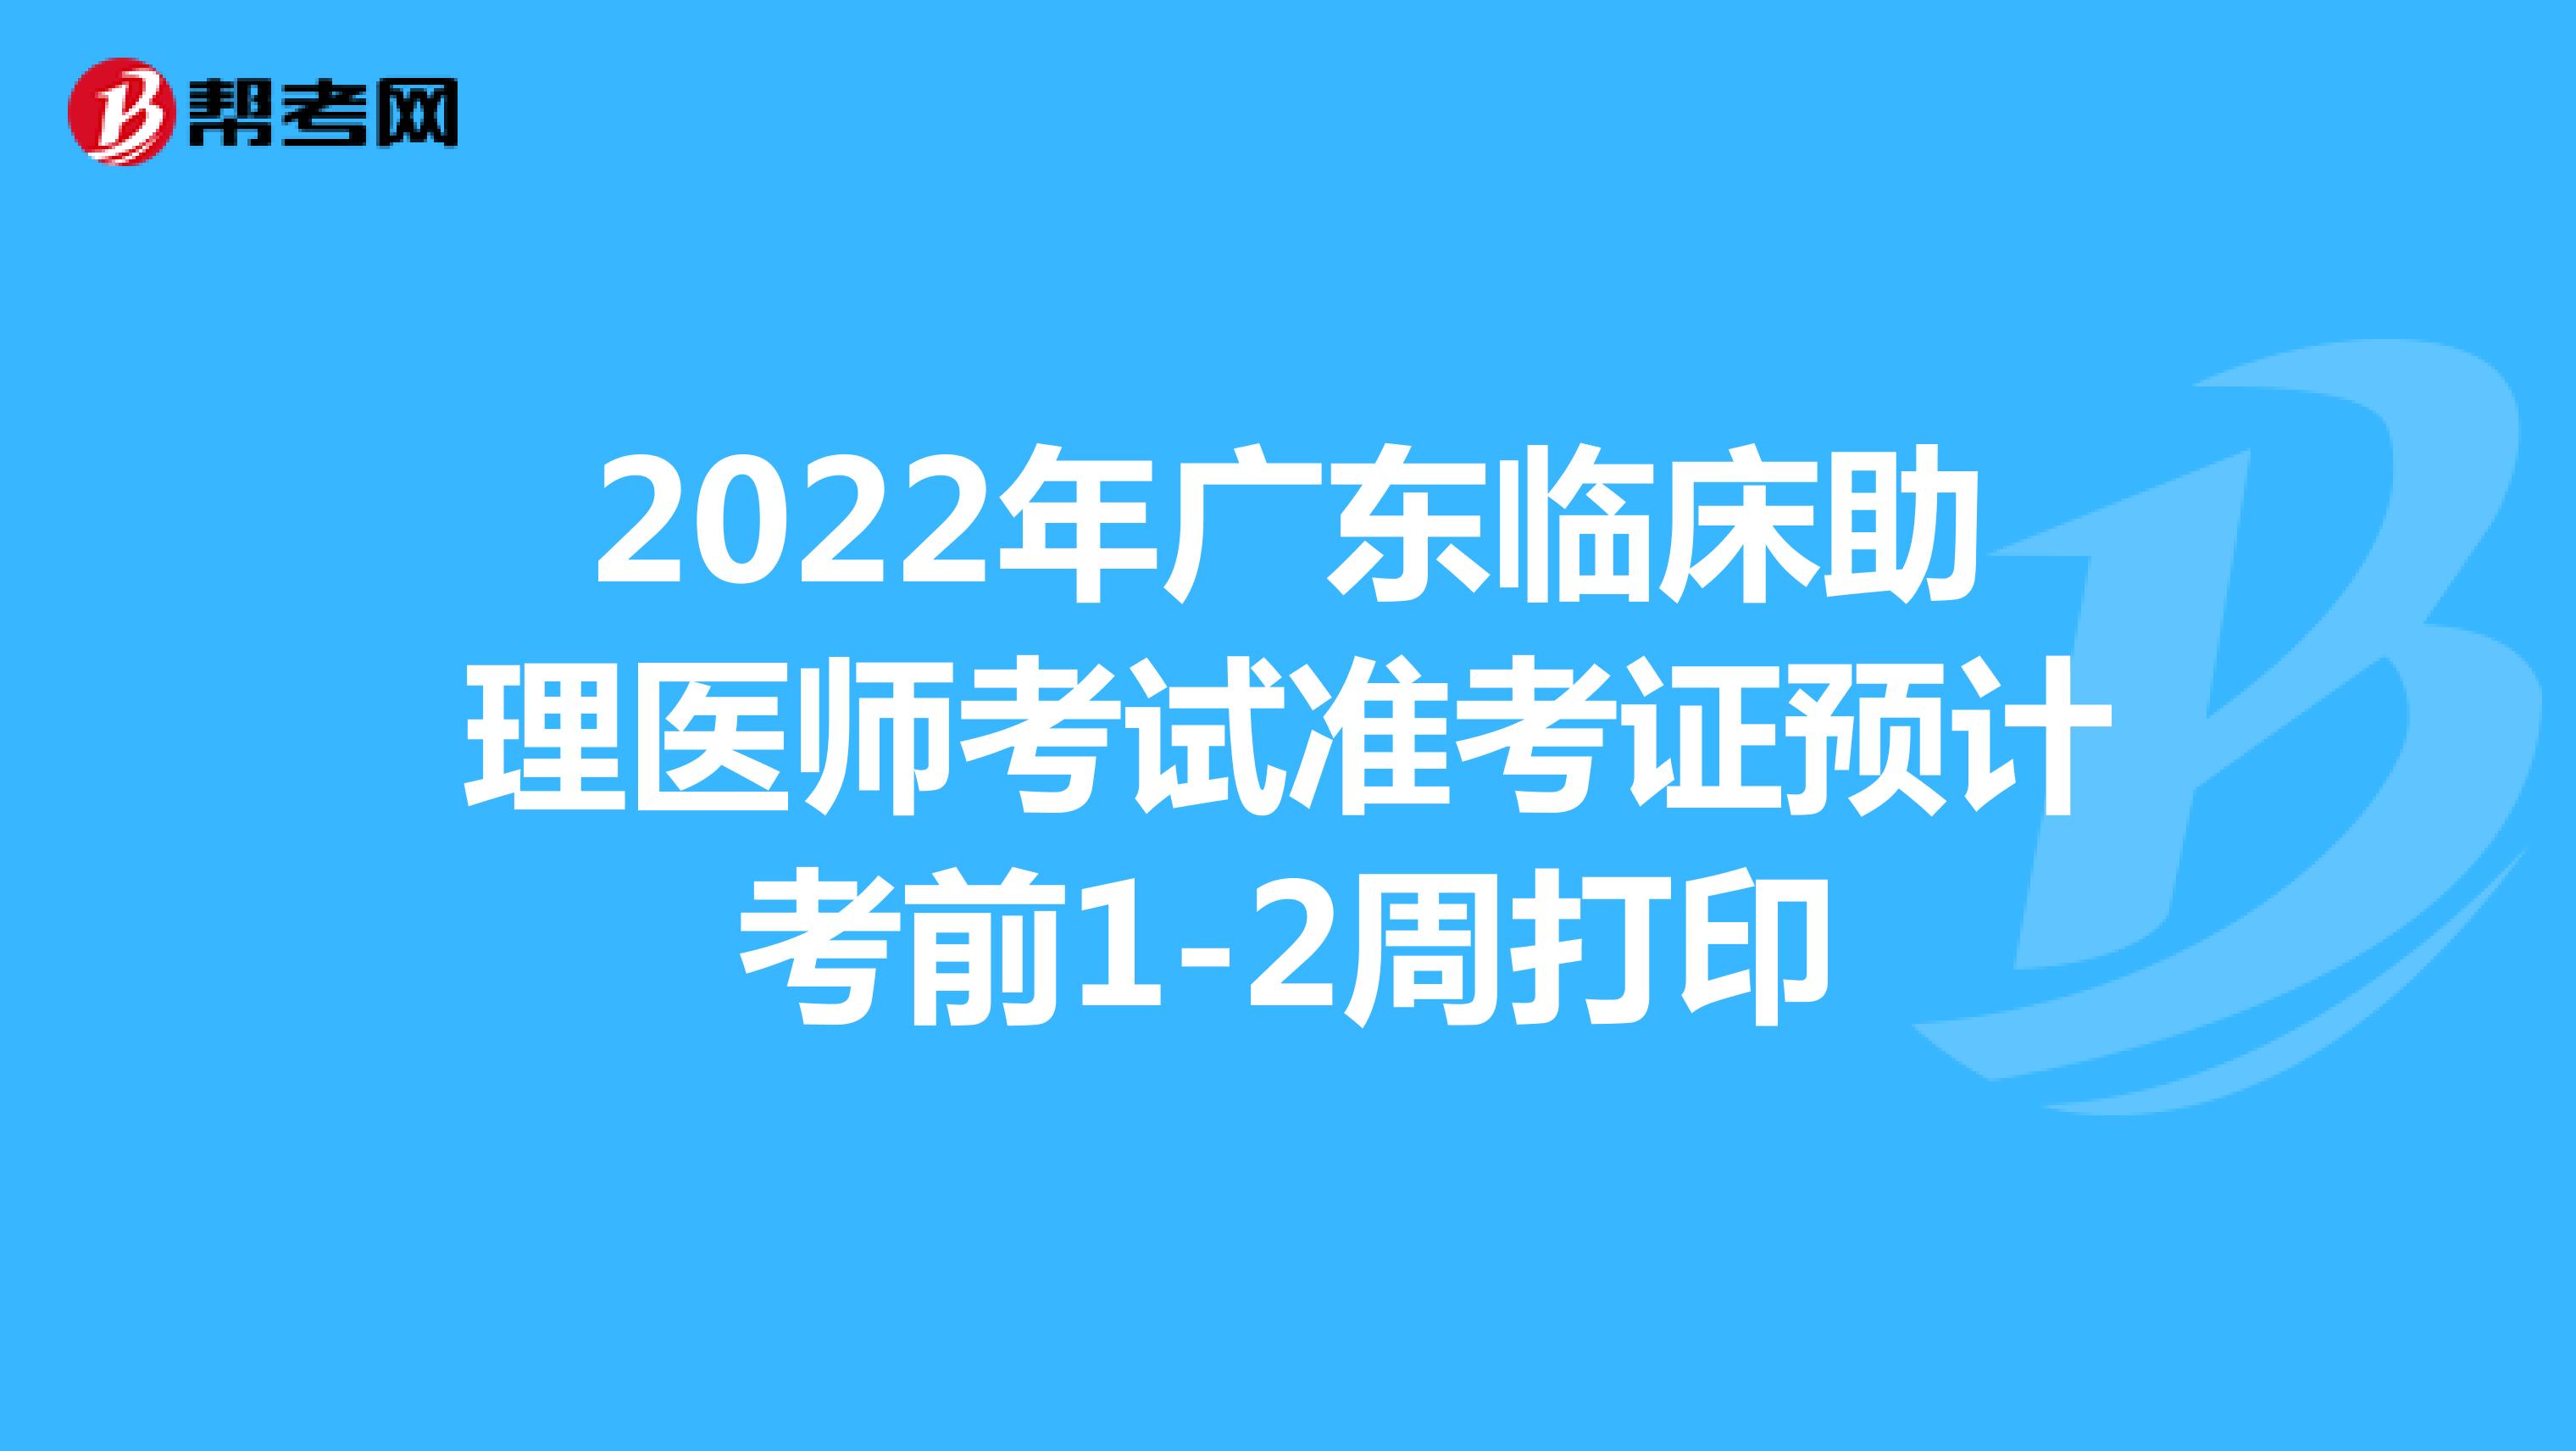 2022年广东临床助理医师考试准考证预计考前1-2周打印